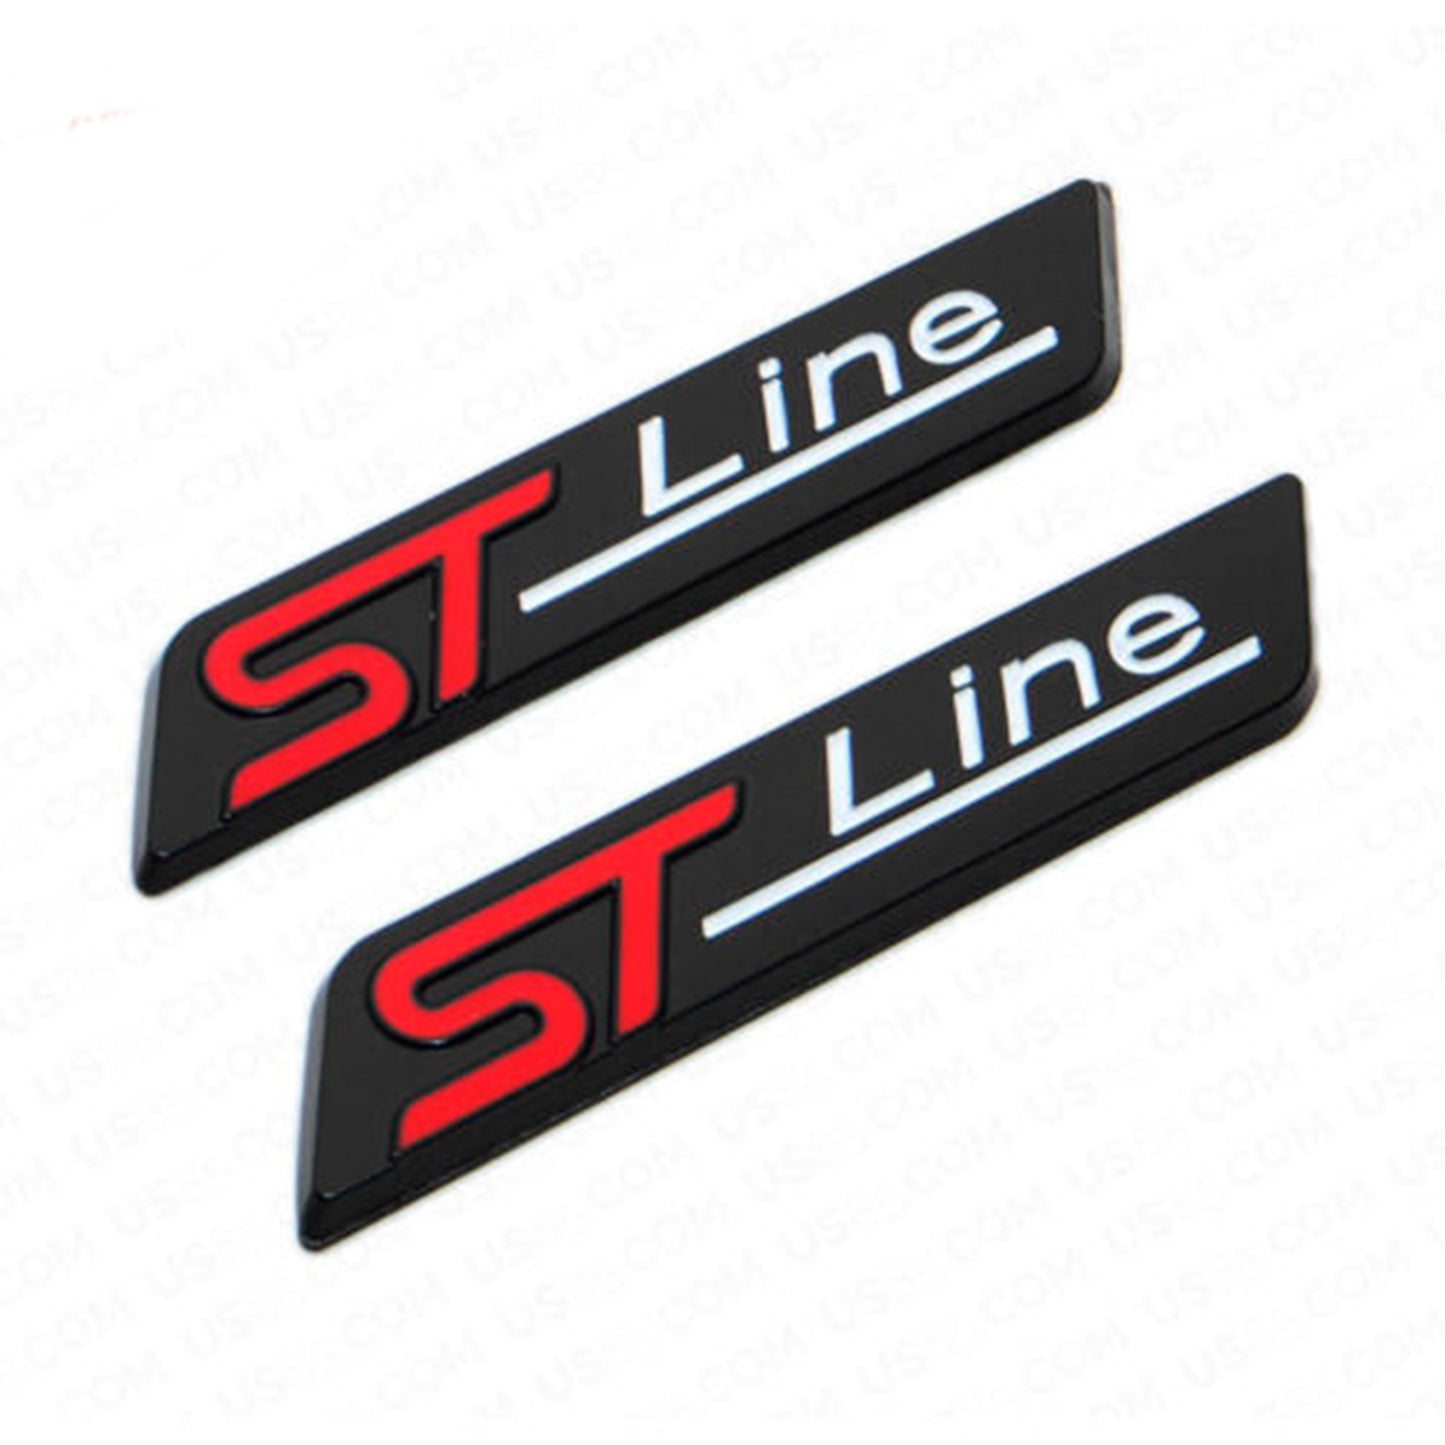 Ford 2x ST LINE Car Sport Fender Marker Badge Racing Emblem Black Red Decor